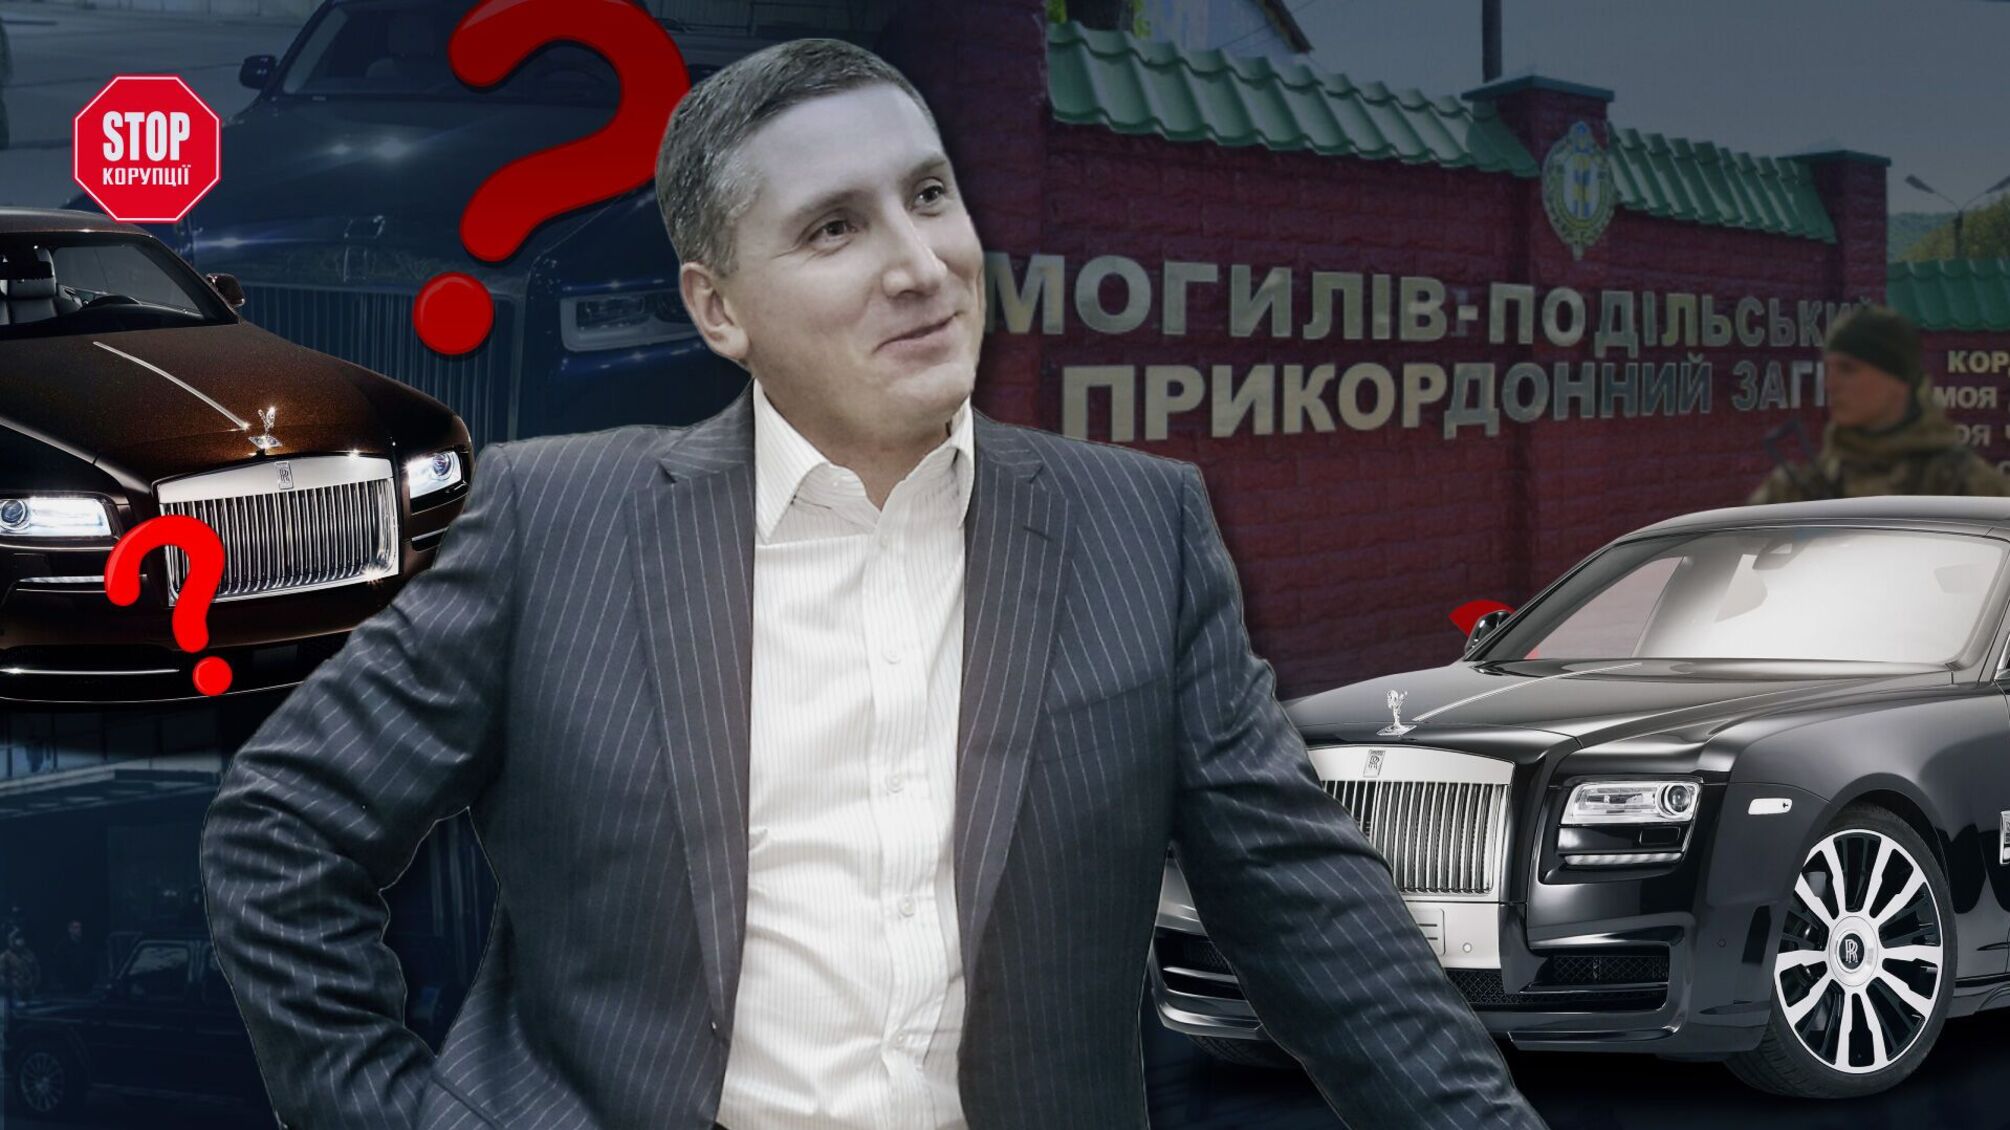 Пророссийский миллиардер Полищук пытался вывезти дорогие авто из Украины